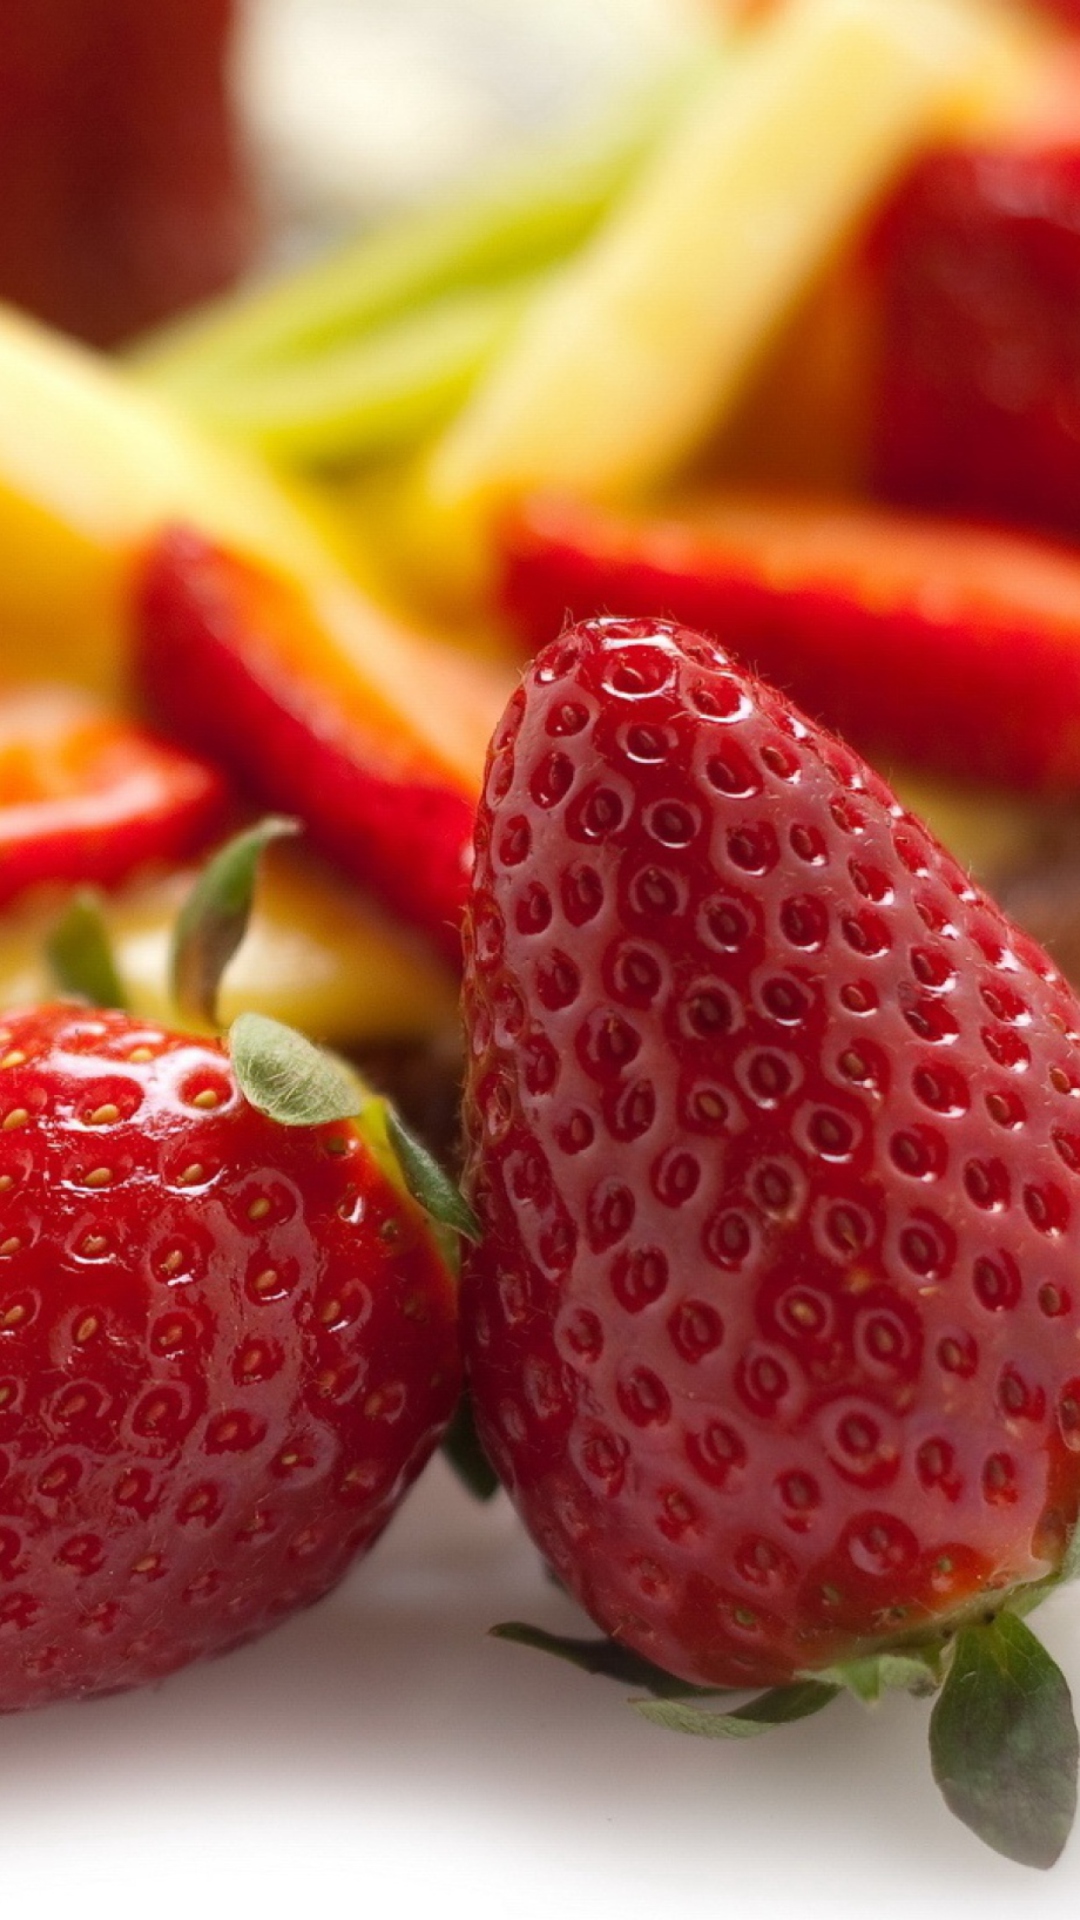 Обои Strawberries Tart 1080x1920